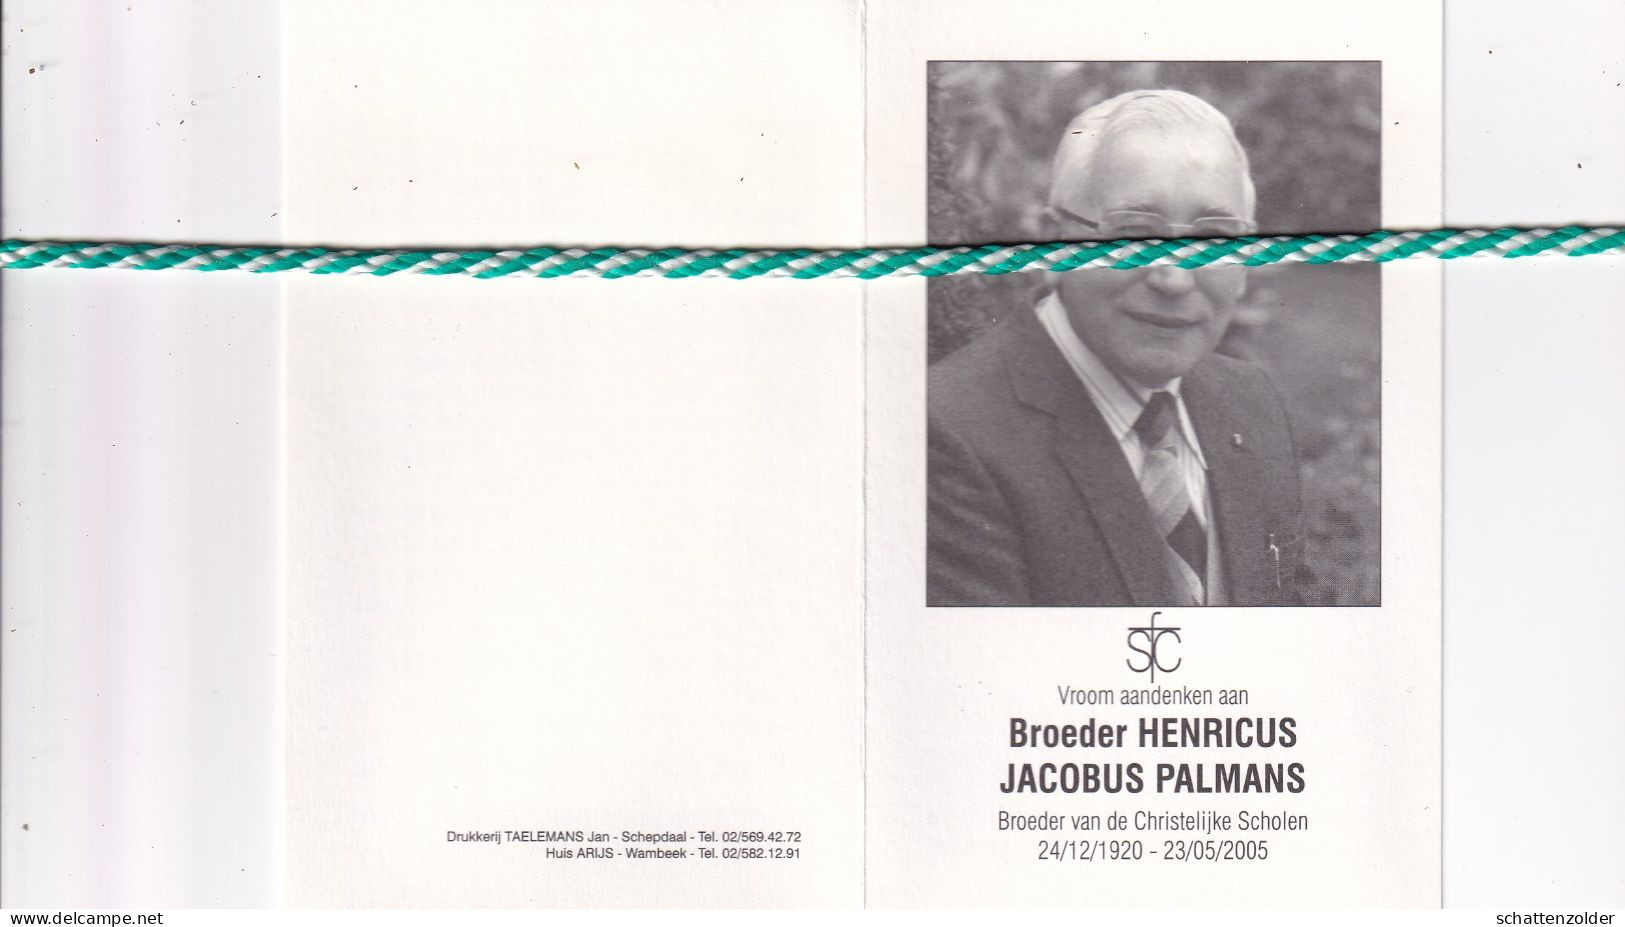 Broeder Henricus (Jacobus Palmans), Hamont 1920, Groot-Bijgaarden 2005. Foto - Todesanzeige